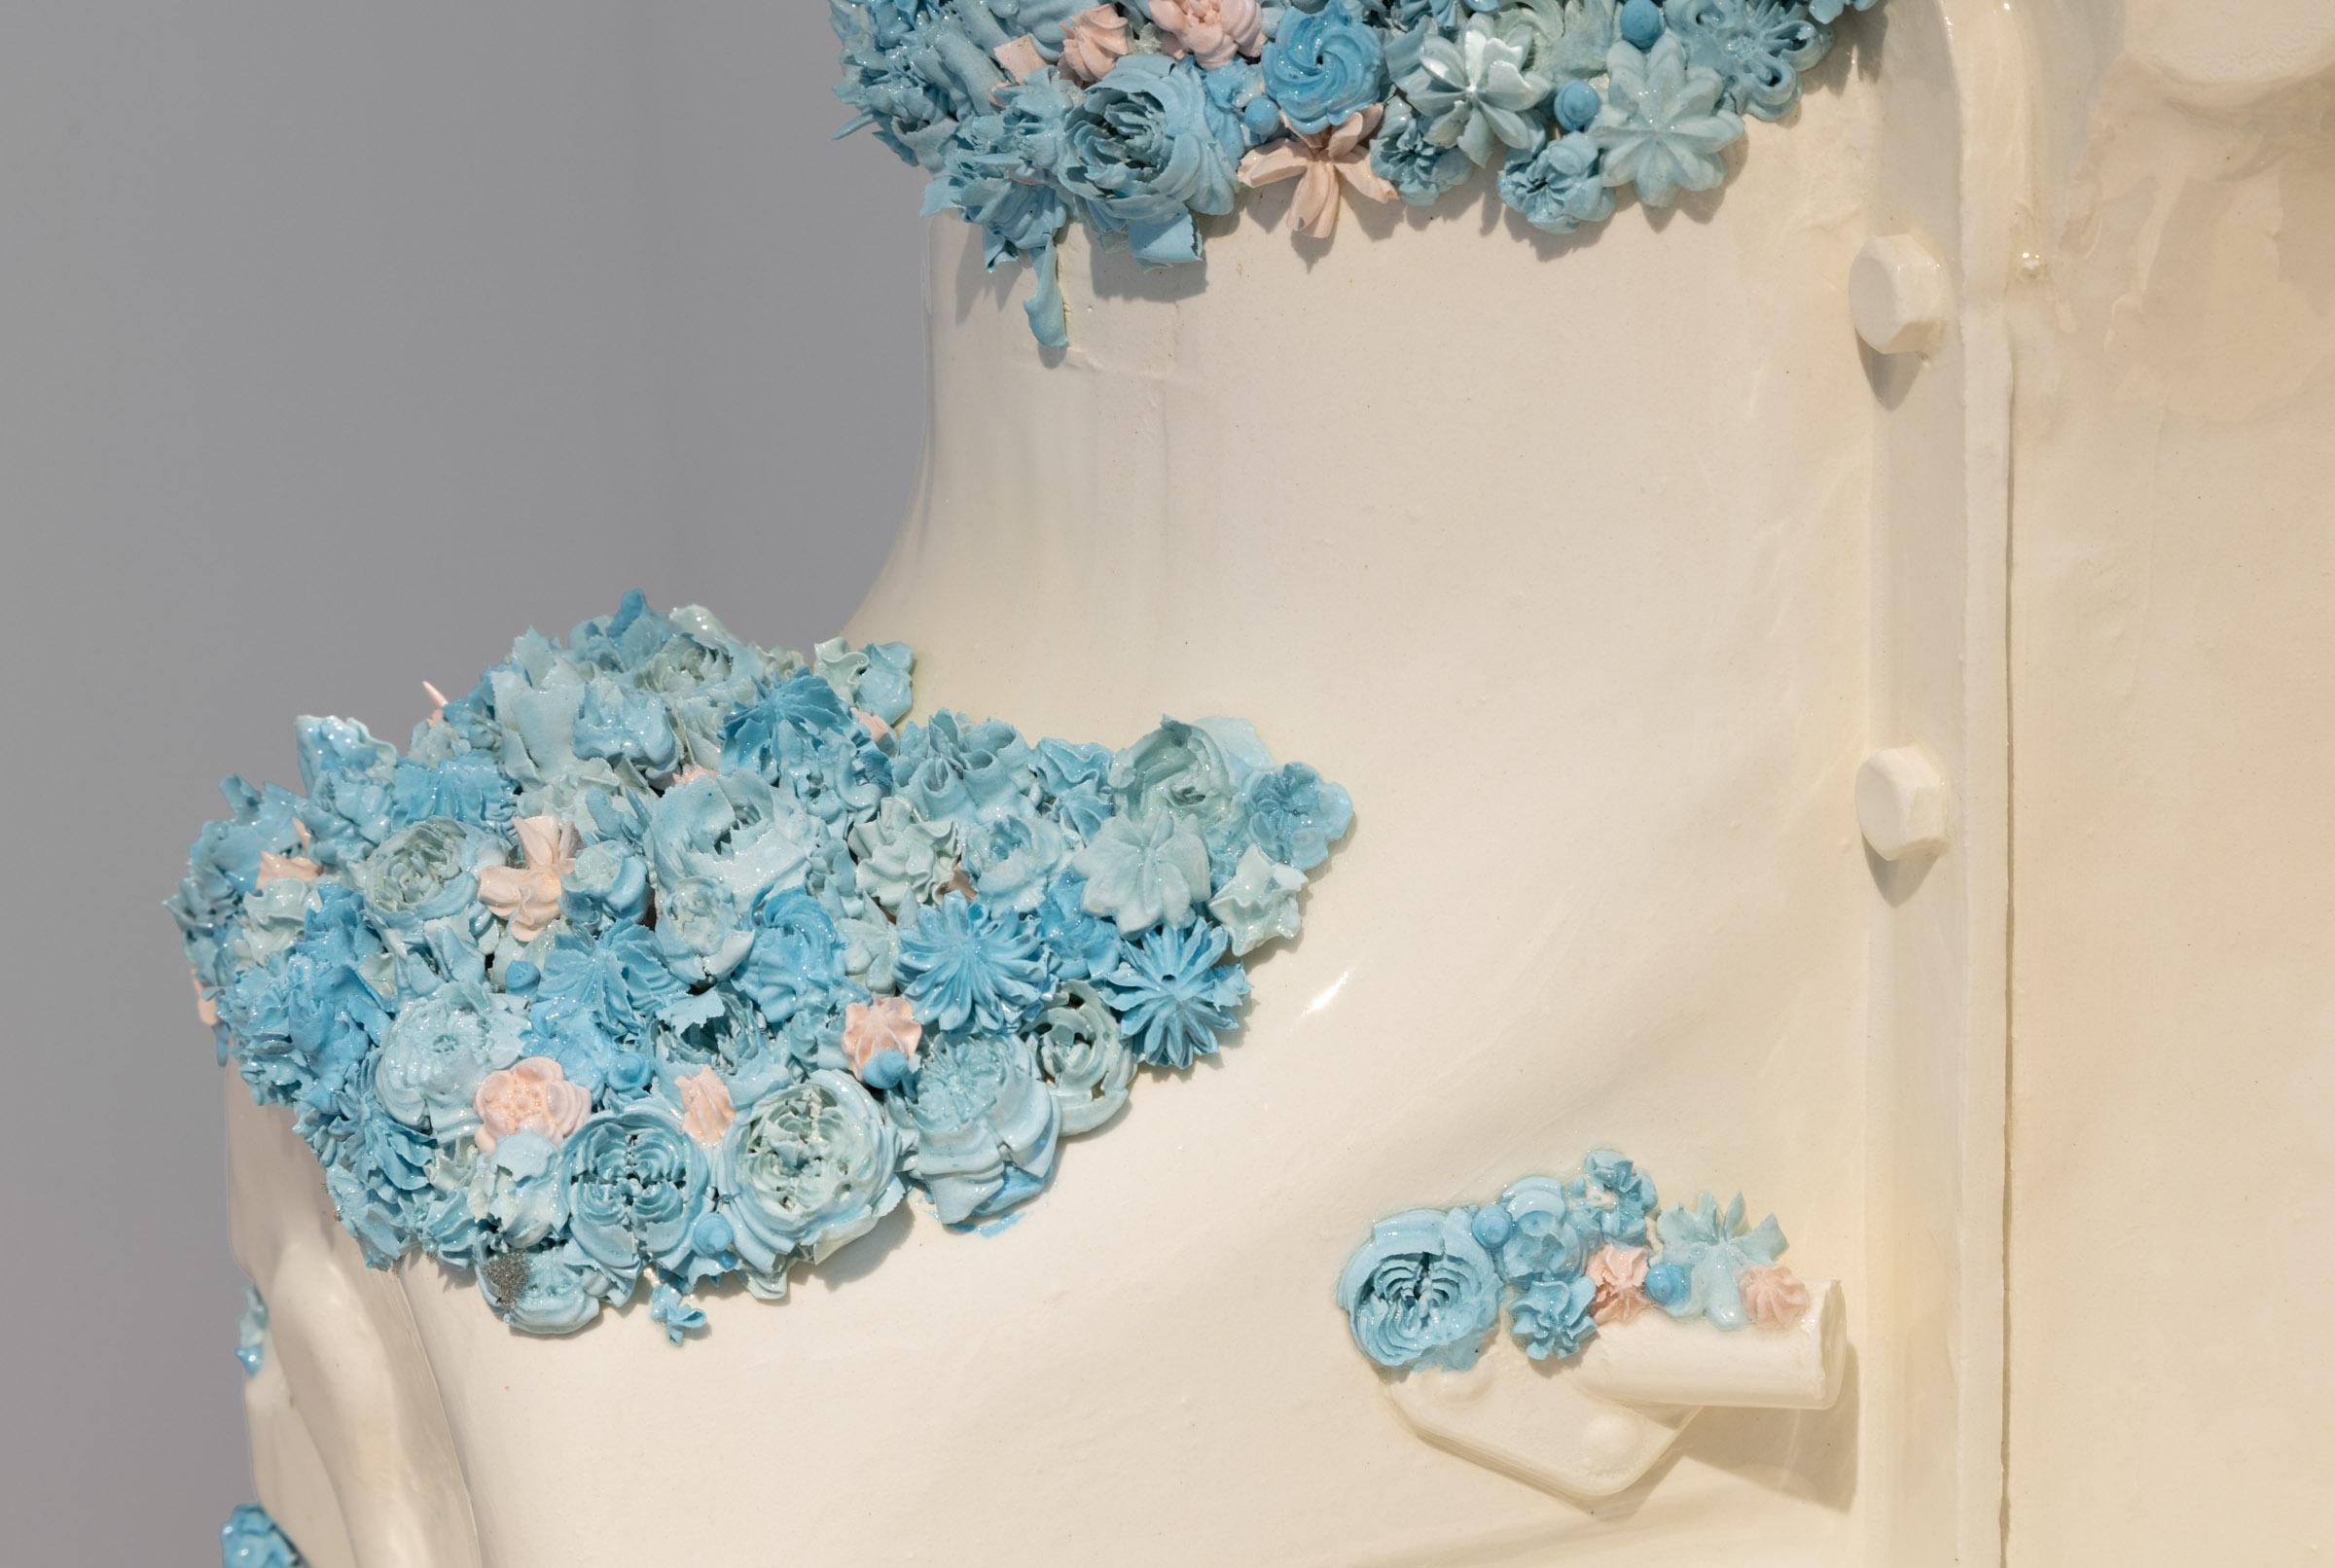 Motorrad mit blauen Blumen (Zeitgenössisch), Sculpture, von Clint Neufeld